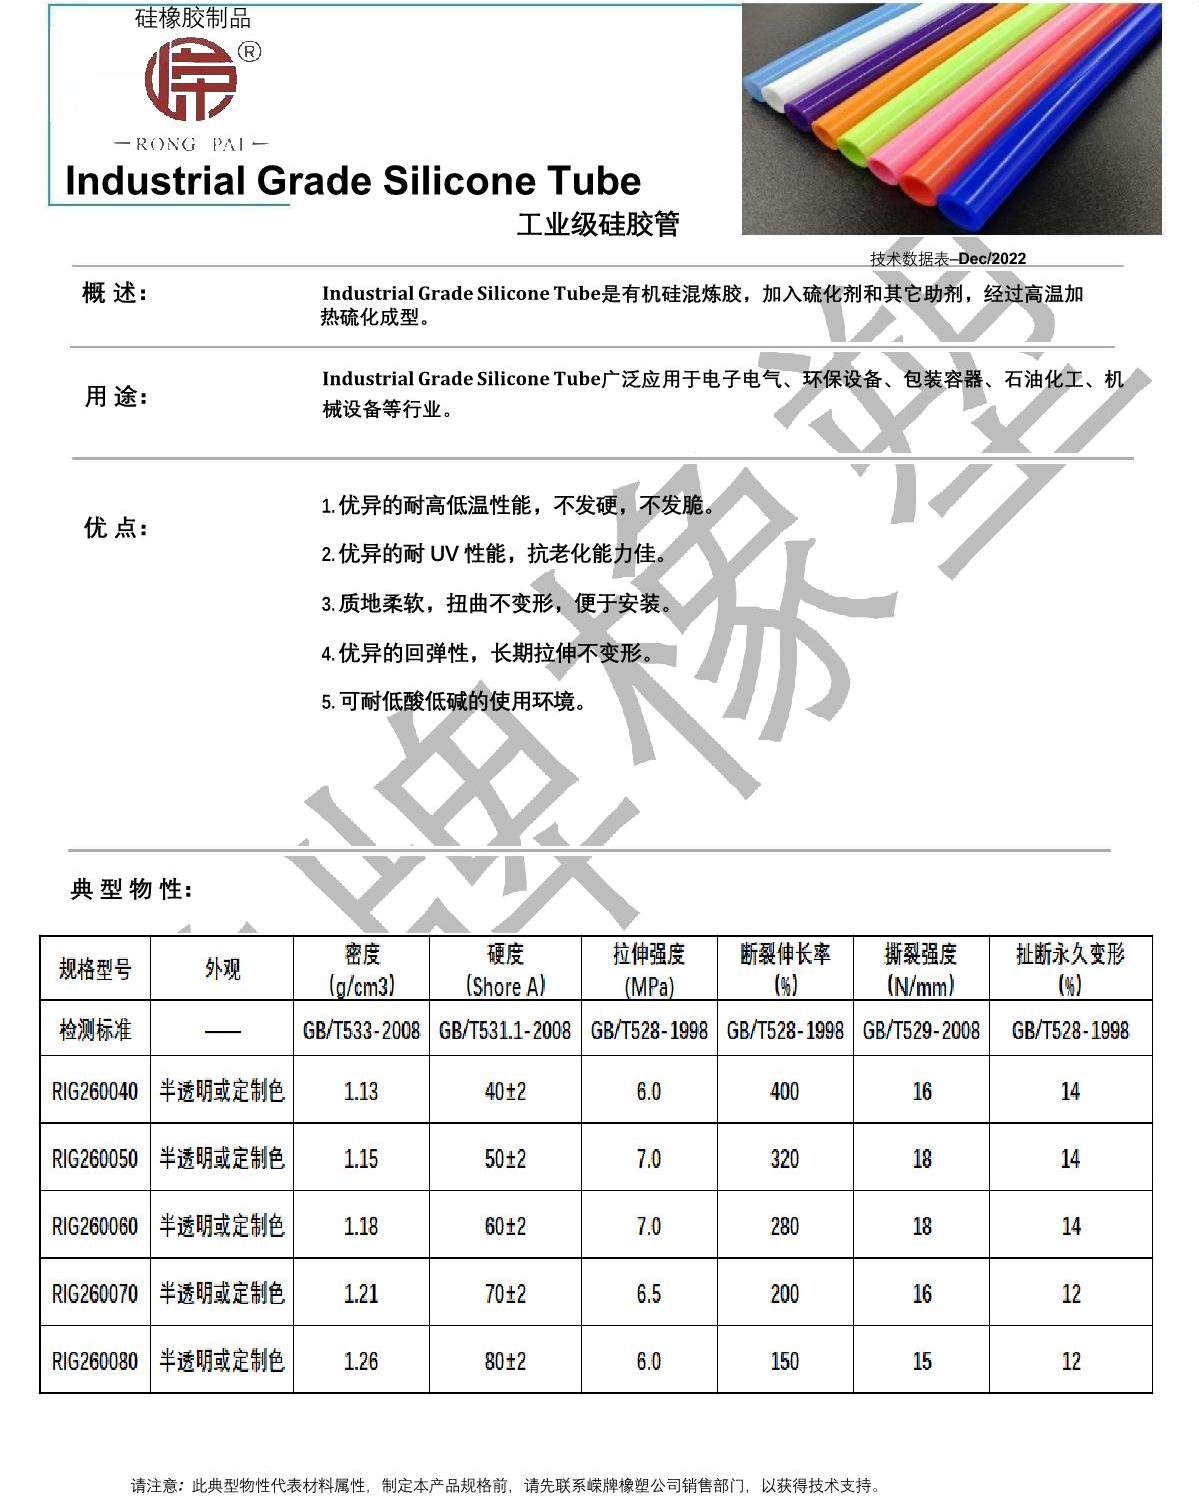 工业级硅胶管产品说明_1.JPG